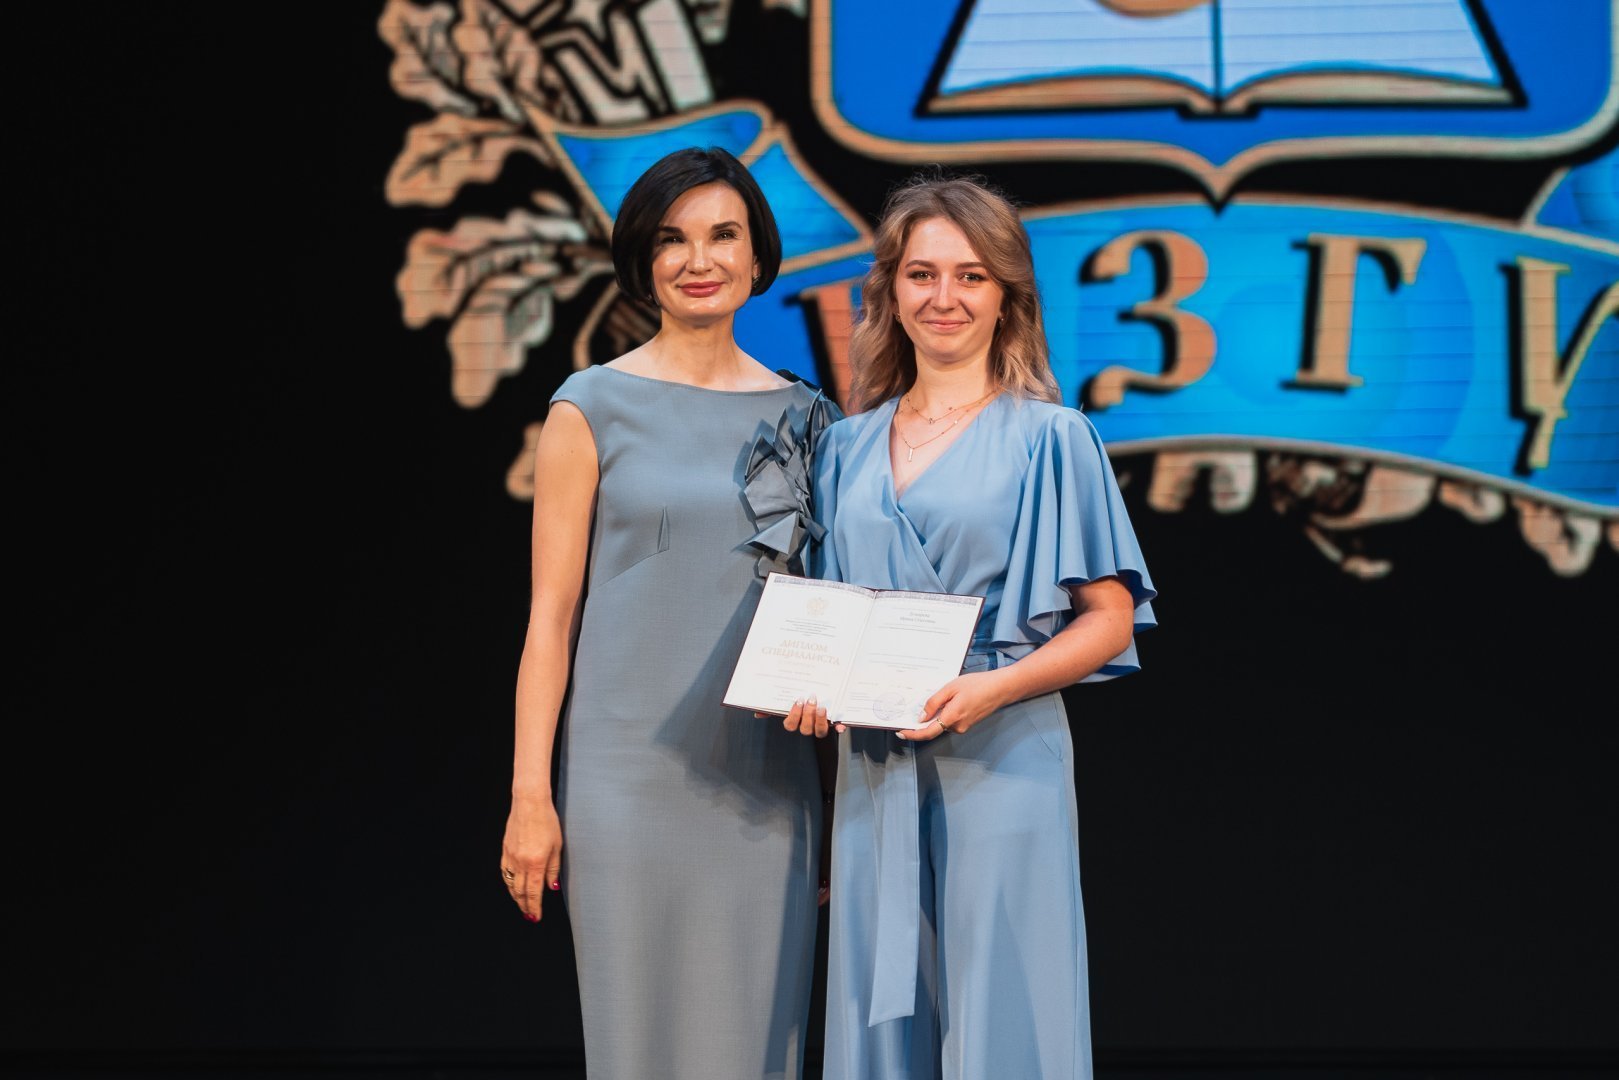 Старший советник губернатора Курской области Наталия Зубарева вручила дипломы выпускникам ЮЗГУ